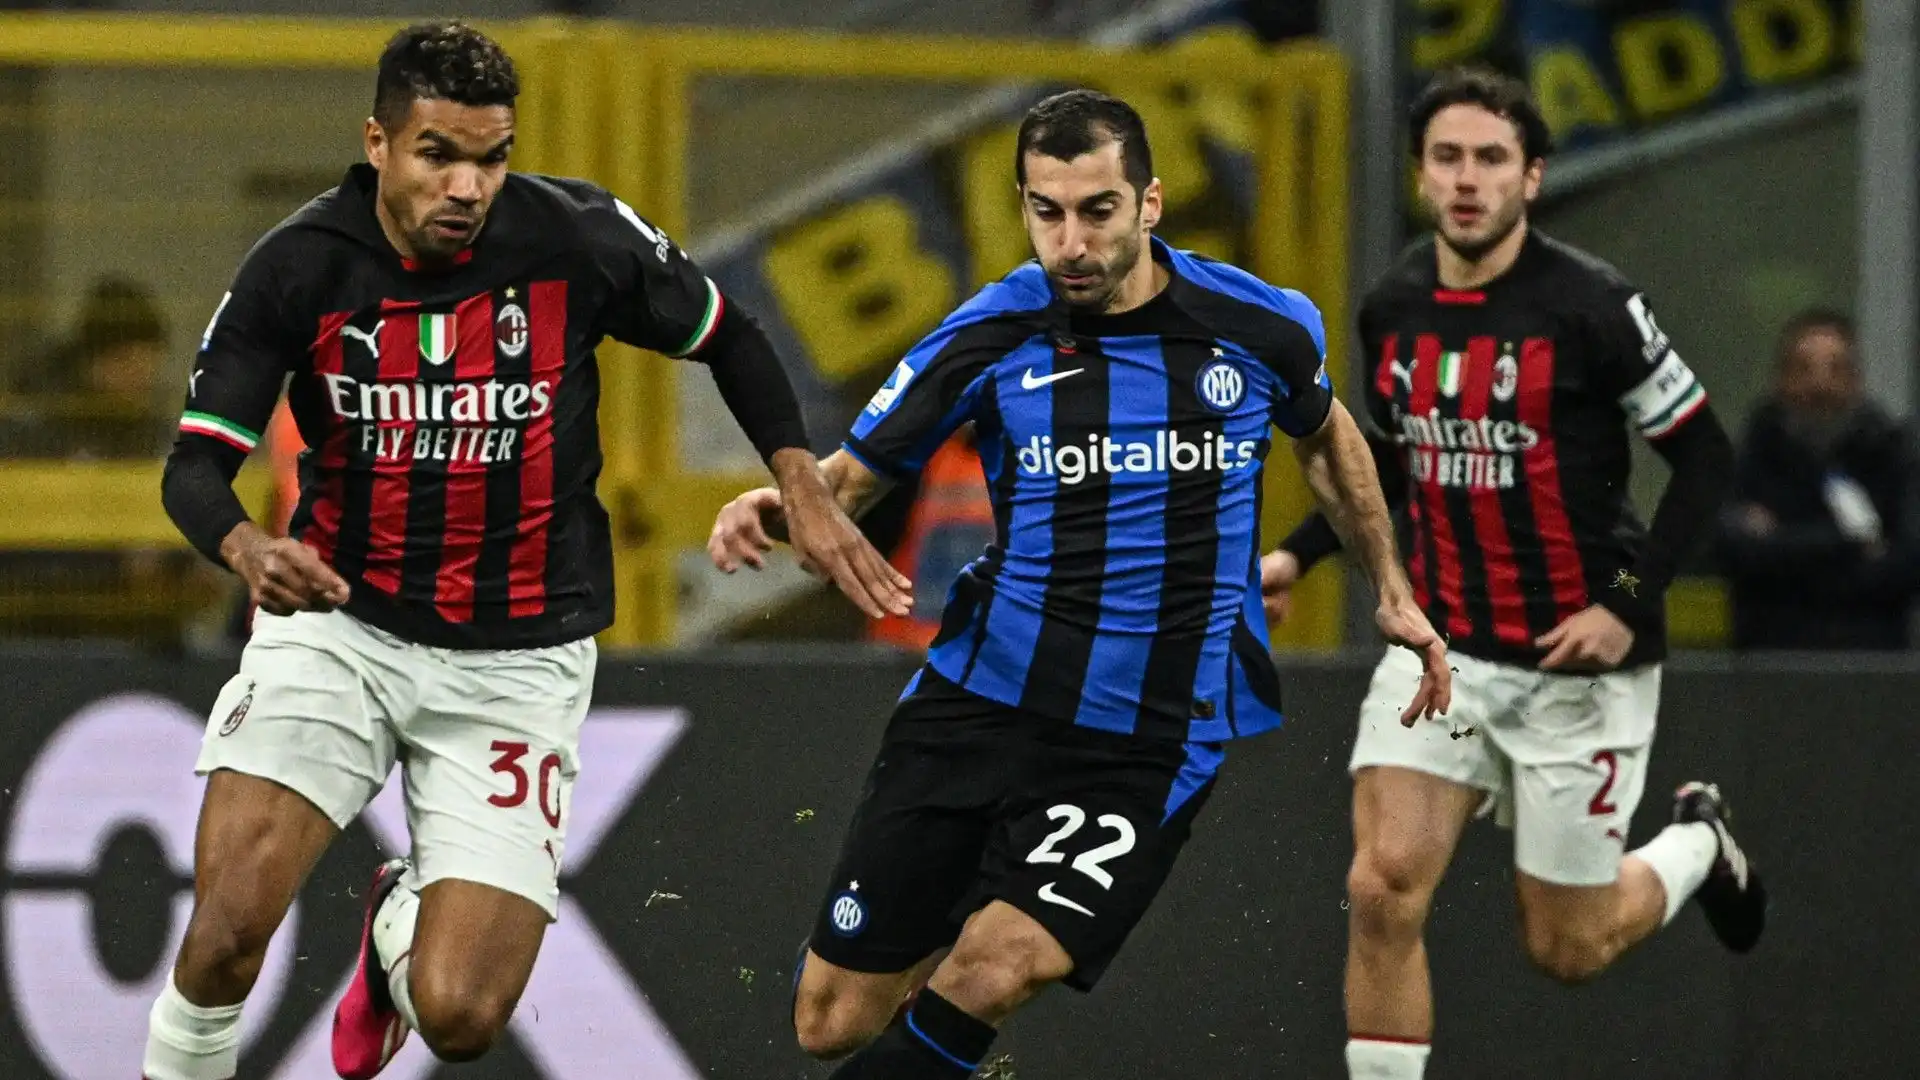 L'obiettivo del Milan è la qualificazione in Champions League: non sarà facile per i rossoneri